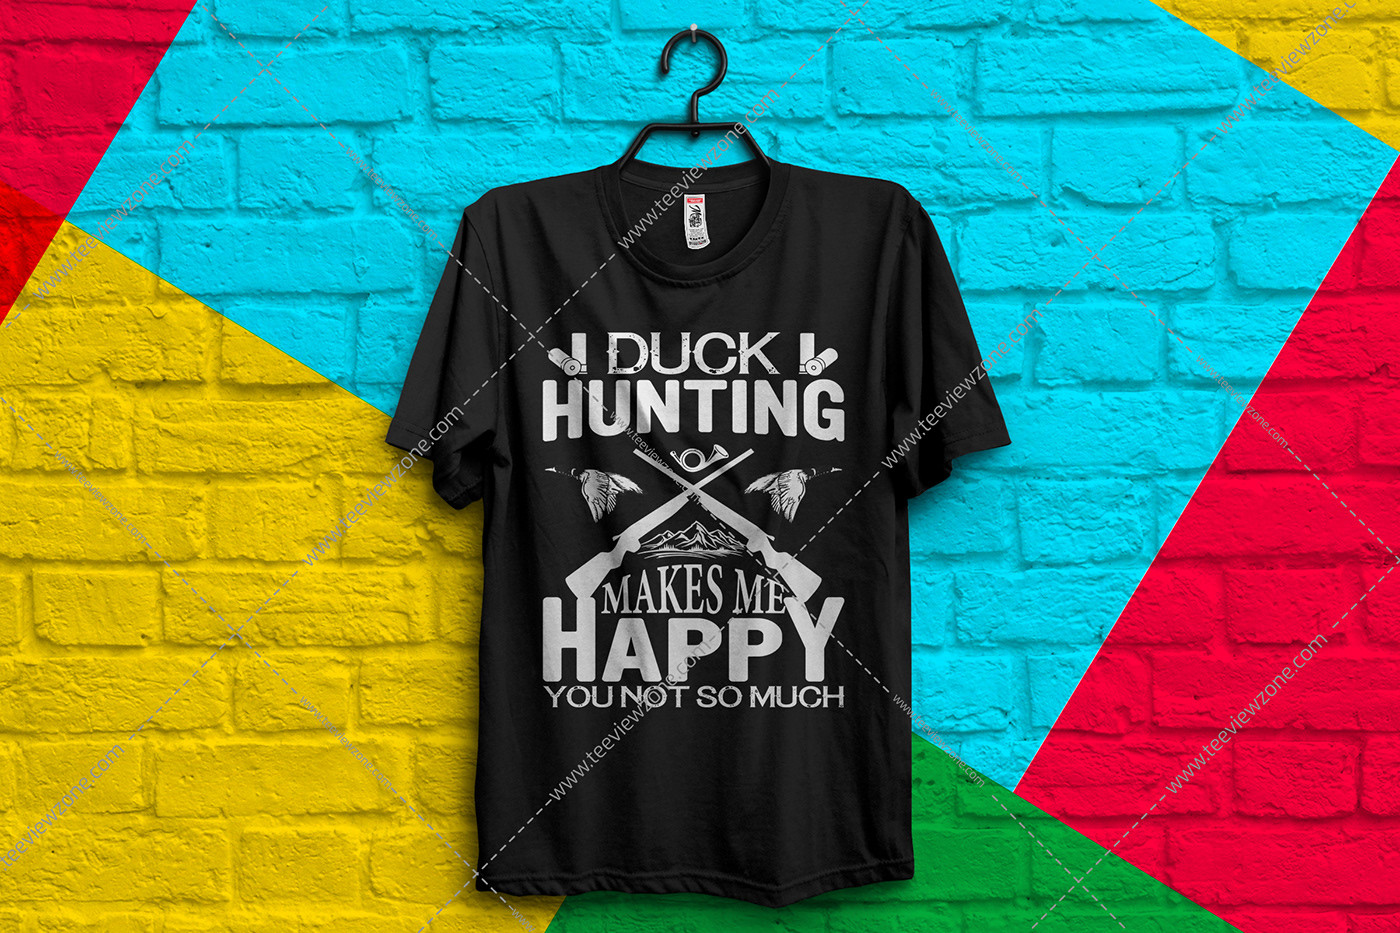 hunting t shirt design
hunting t shirt designs
hunting shirts
hunting vector
funny hunting shirts
hu